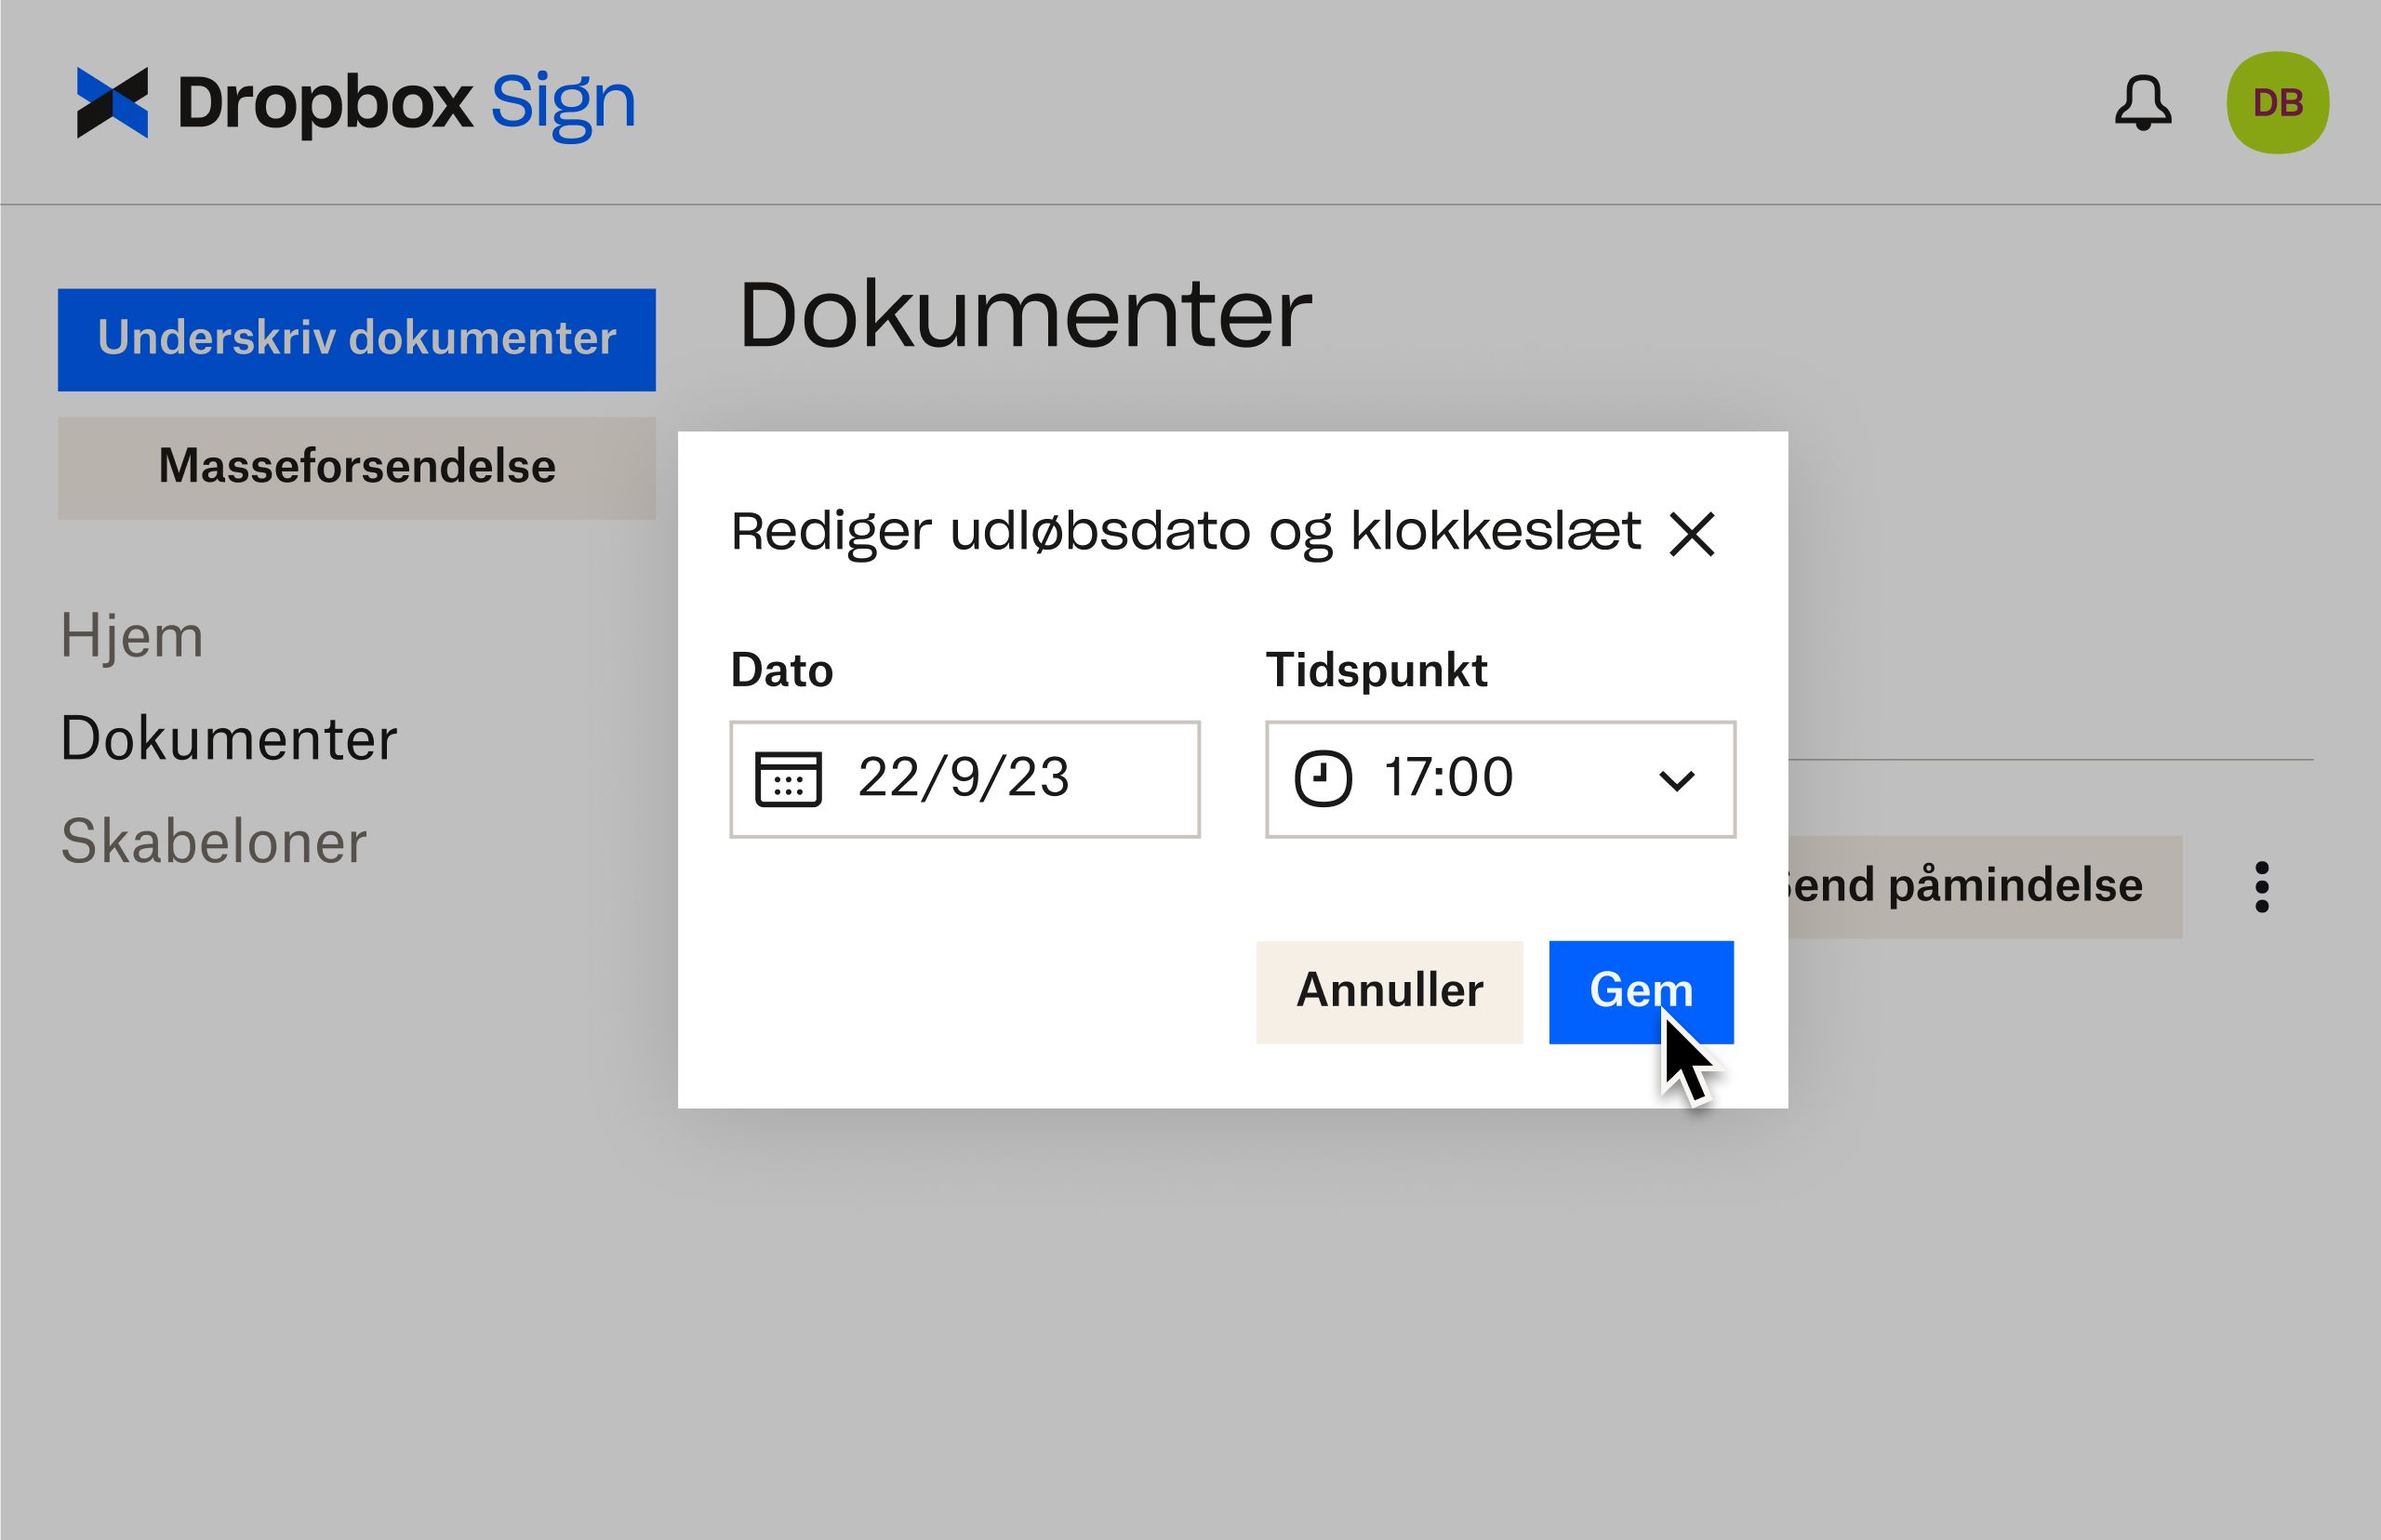 Dropbox Sign-brugergrænseflade viser, hvordan man redigerer udløbsdatoer efter at have sendt dokument til underskrivning